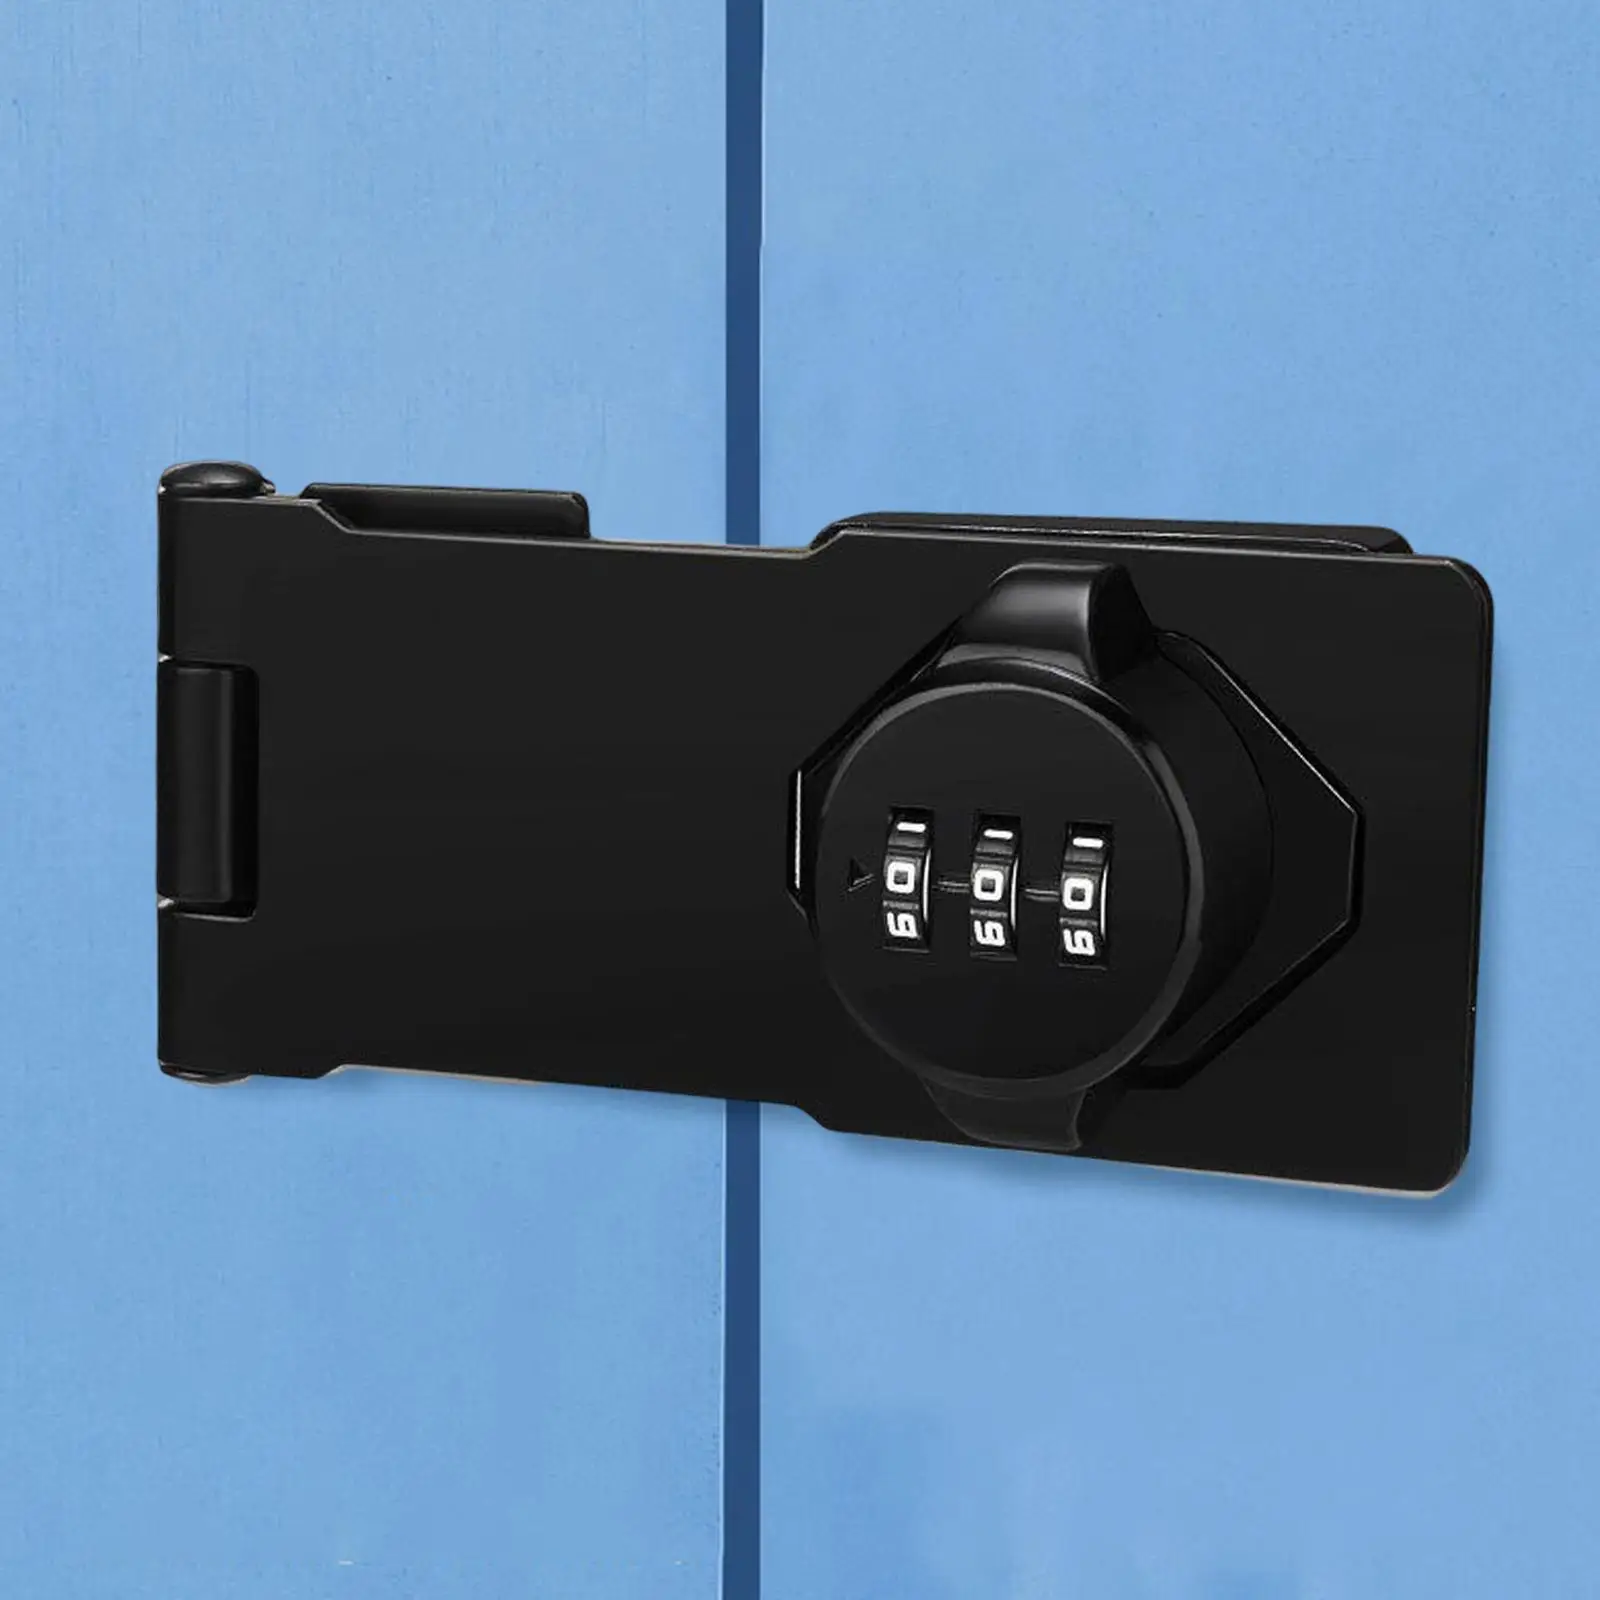 Keyless Cabinet Door Lock File Cabinet Lock Mechanical Combination Lock Security Lock Password Lock for Barn Door Garden Garage